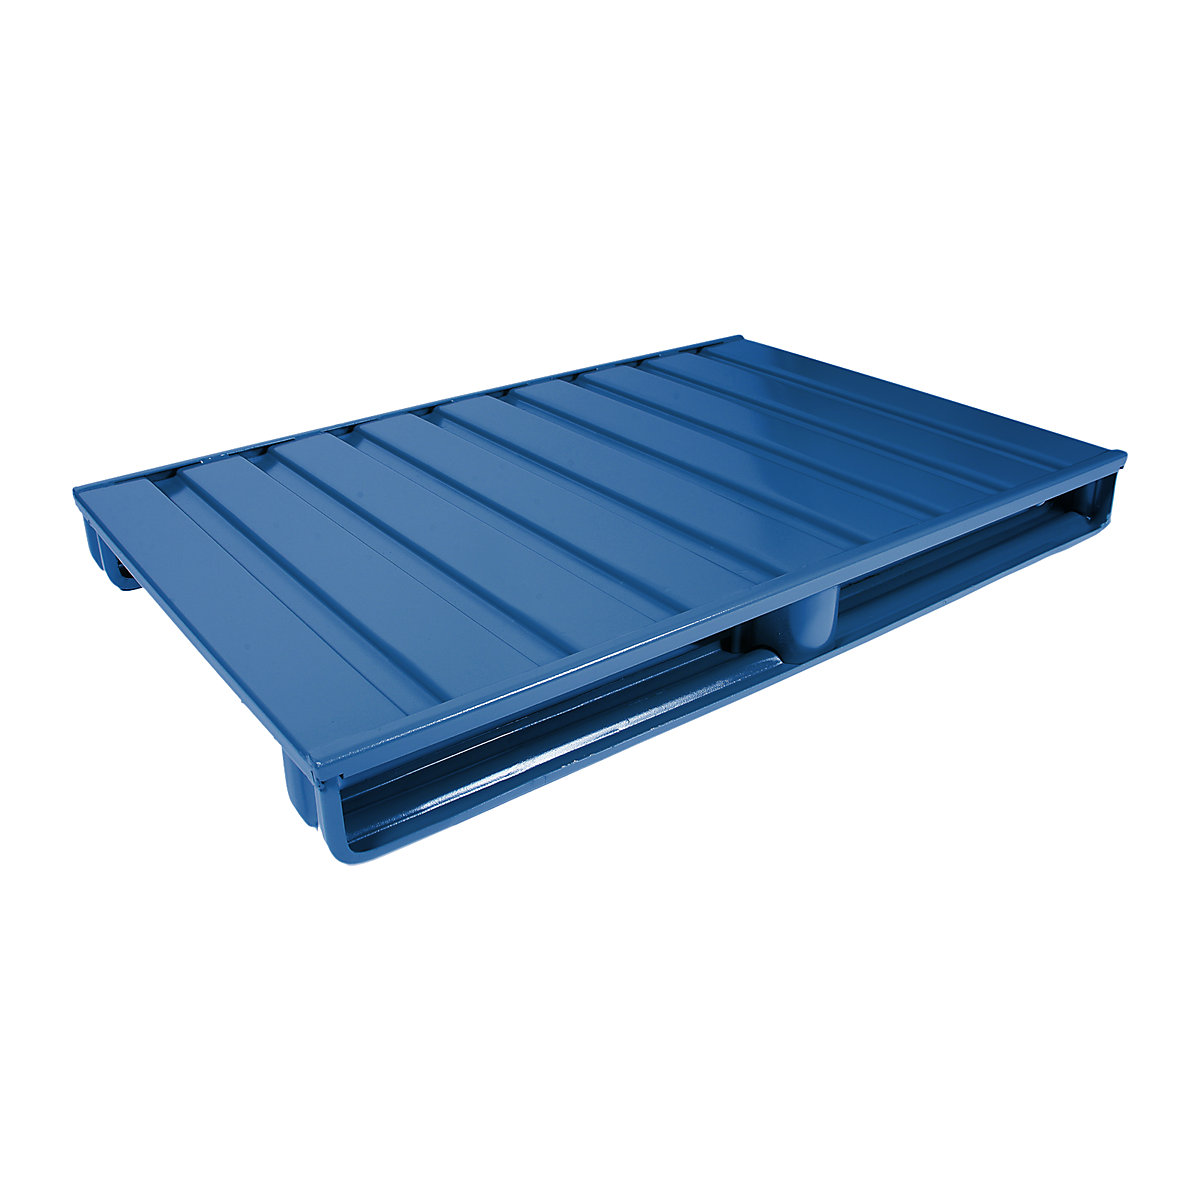 Palete plana de aço – Heson, CxL 1200 x 1000 mm, capacidade de carga 1500 kg, azul genciana, a partir de 10 unid.-2